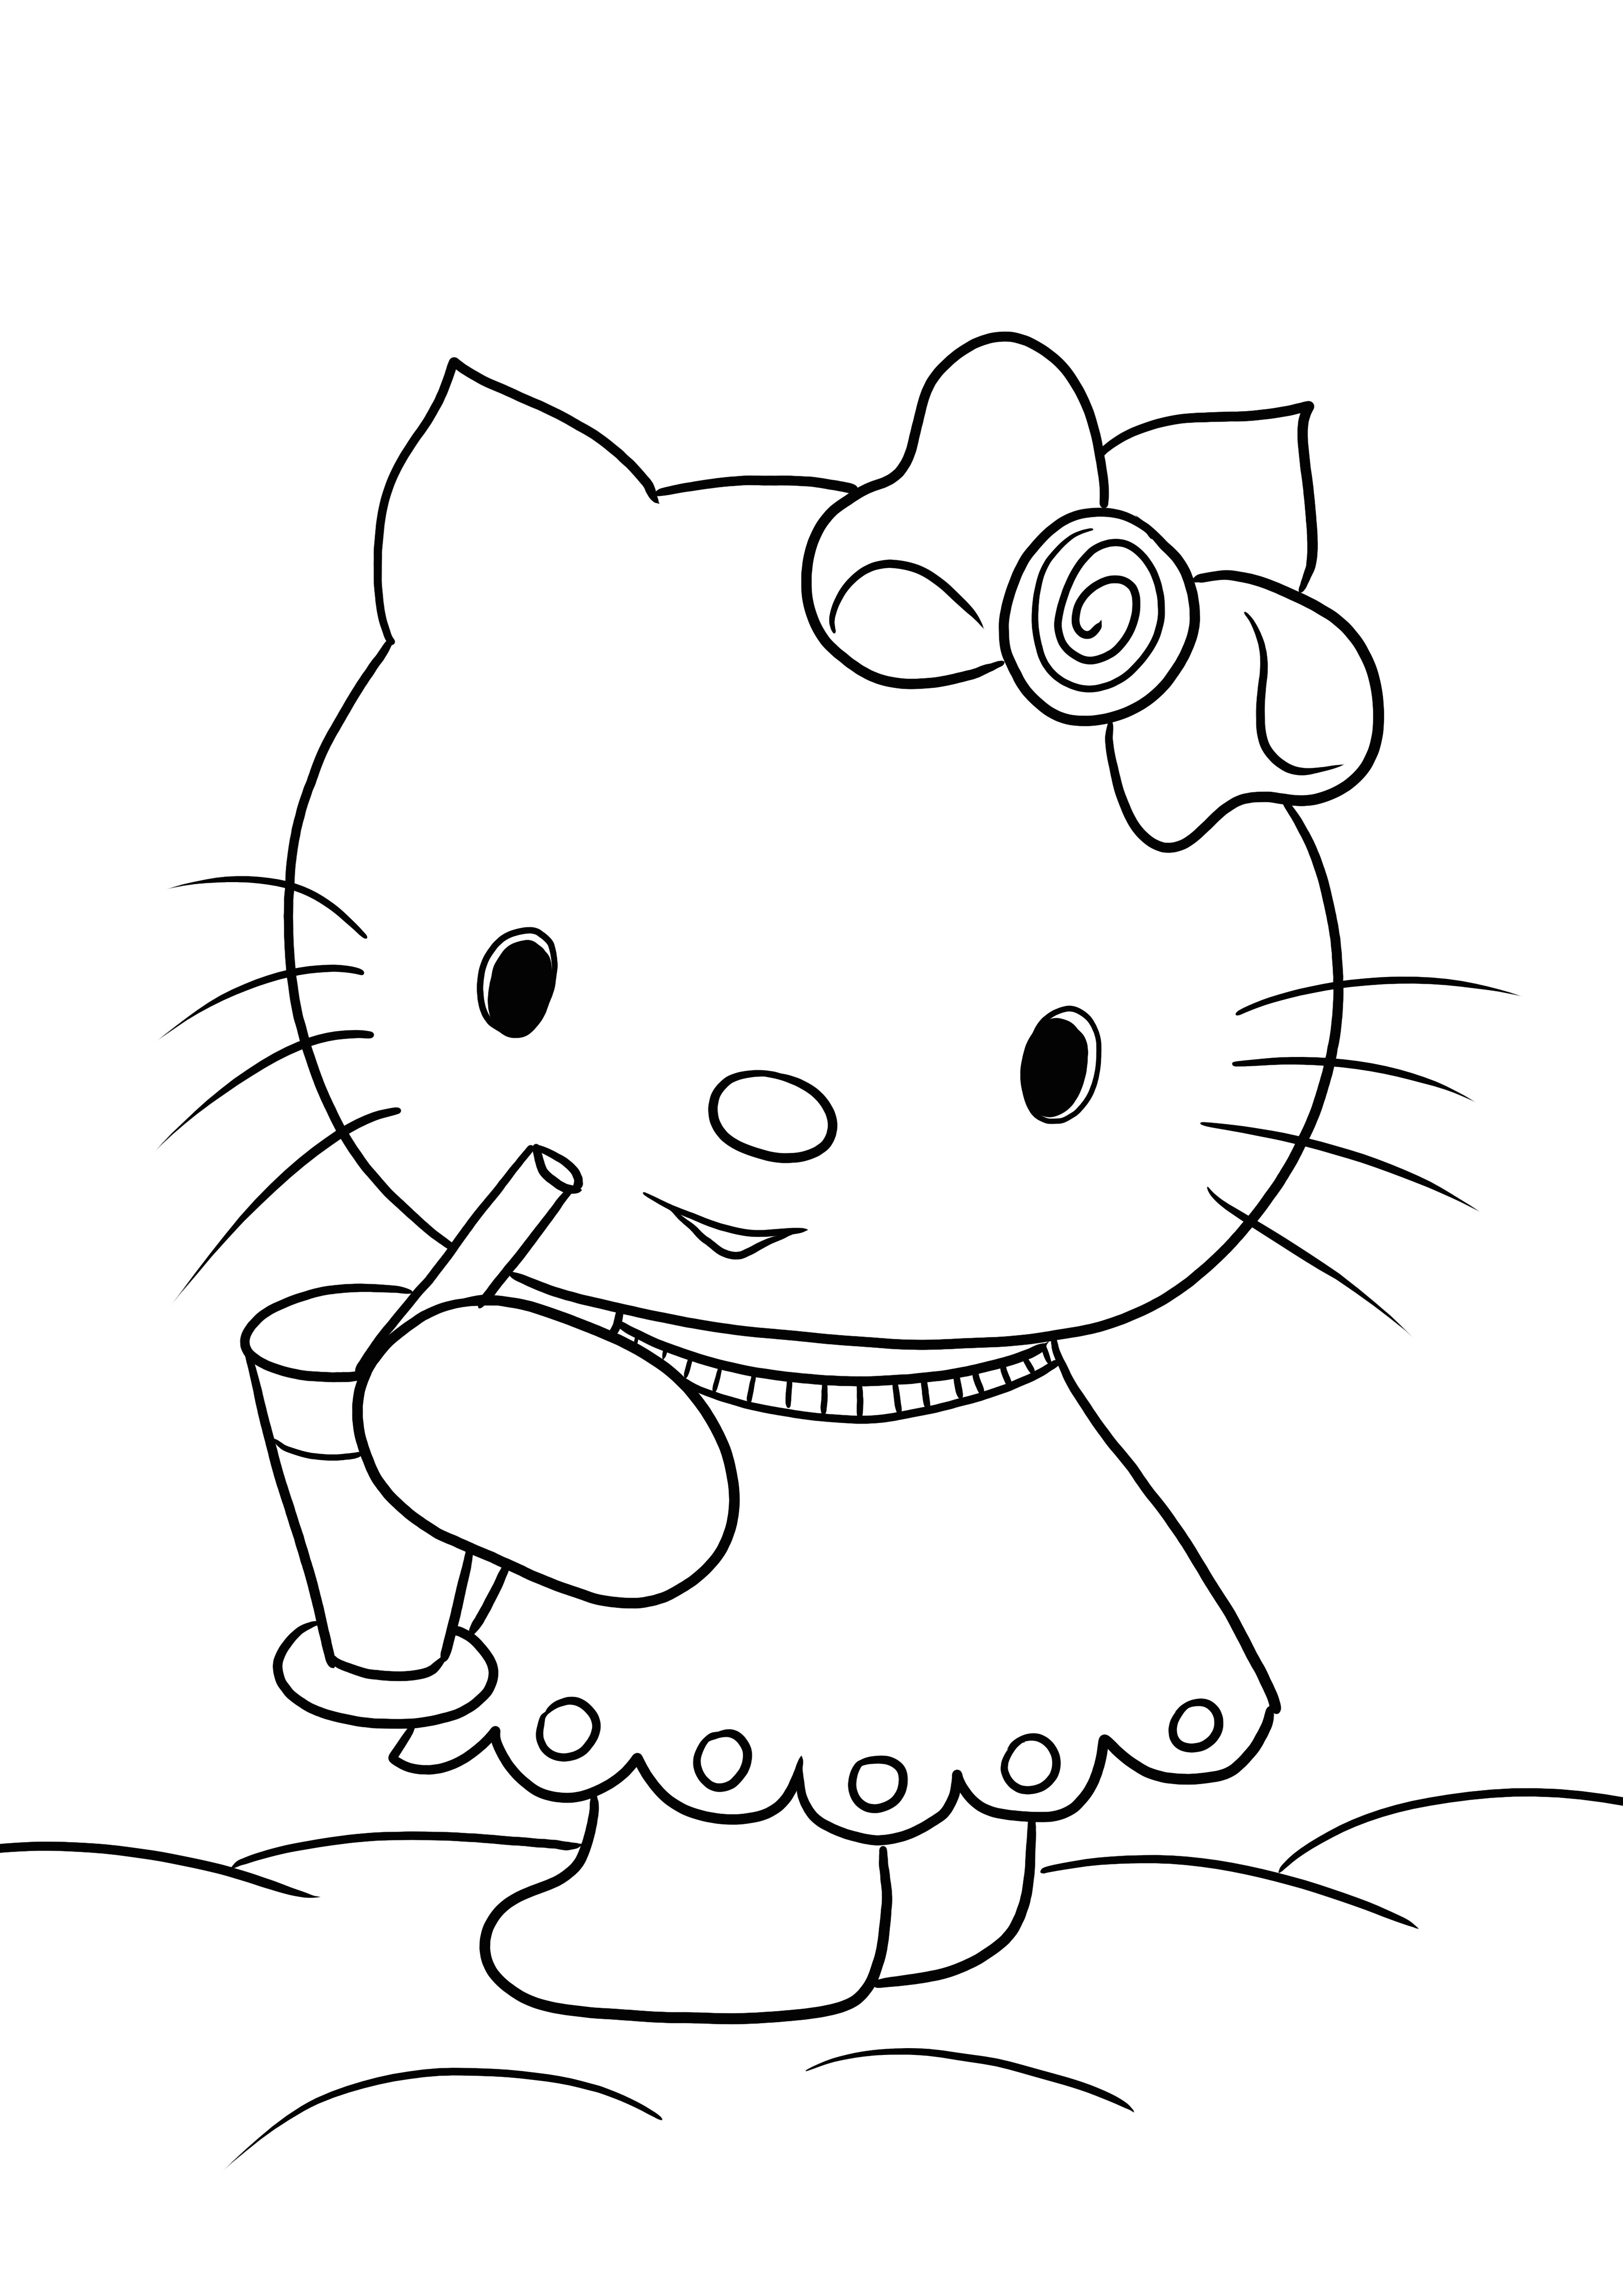 Hello Kitty bebe su limonada favorita imprimible gratis para colorear para niños